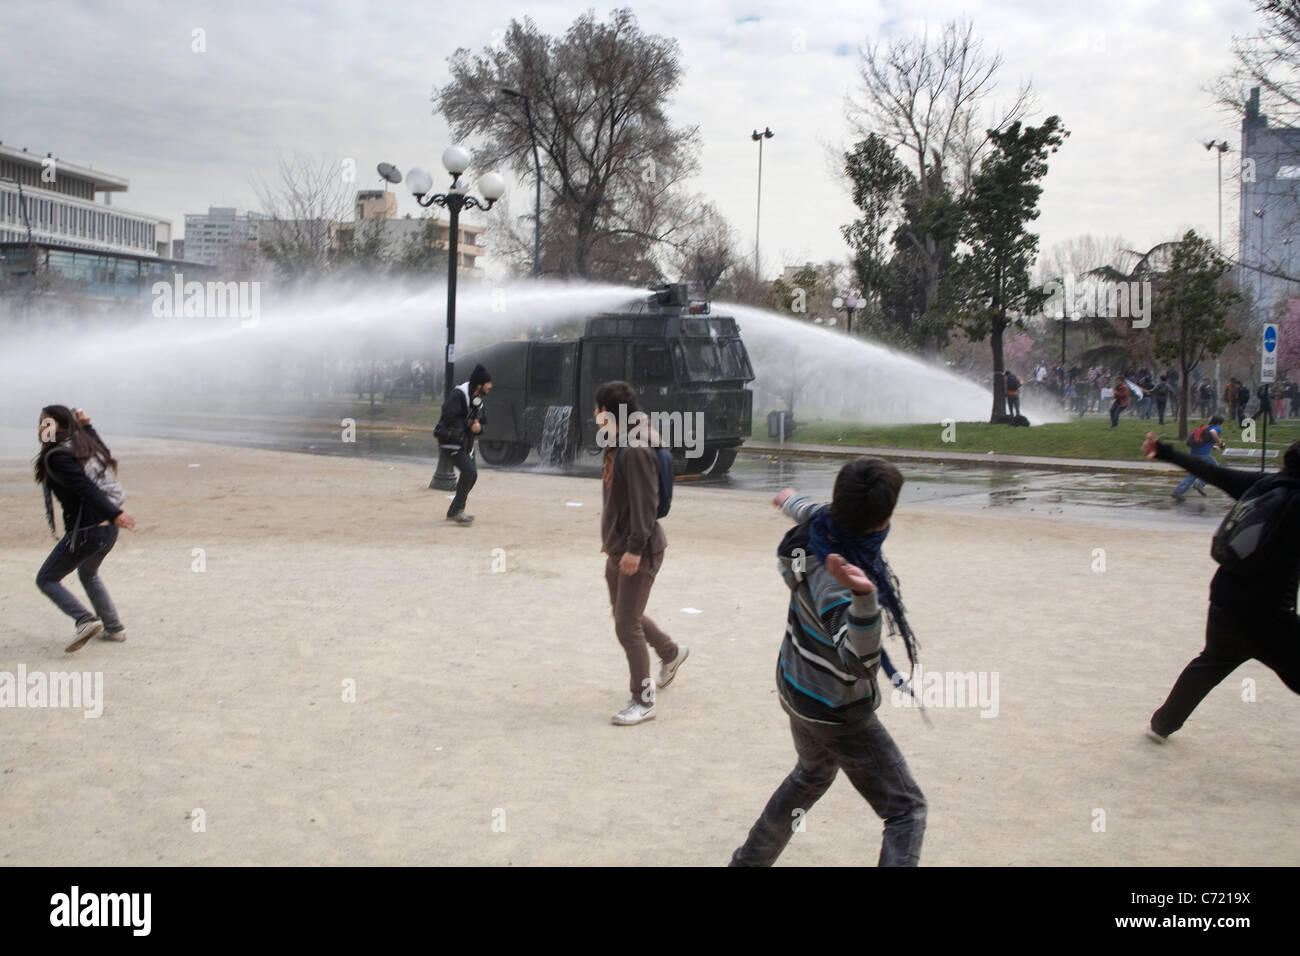 Cannone ad acqua in azione durante una protesta studentesca in Santiago de Cile Foto Stock